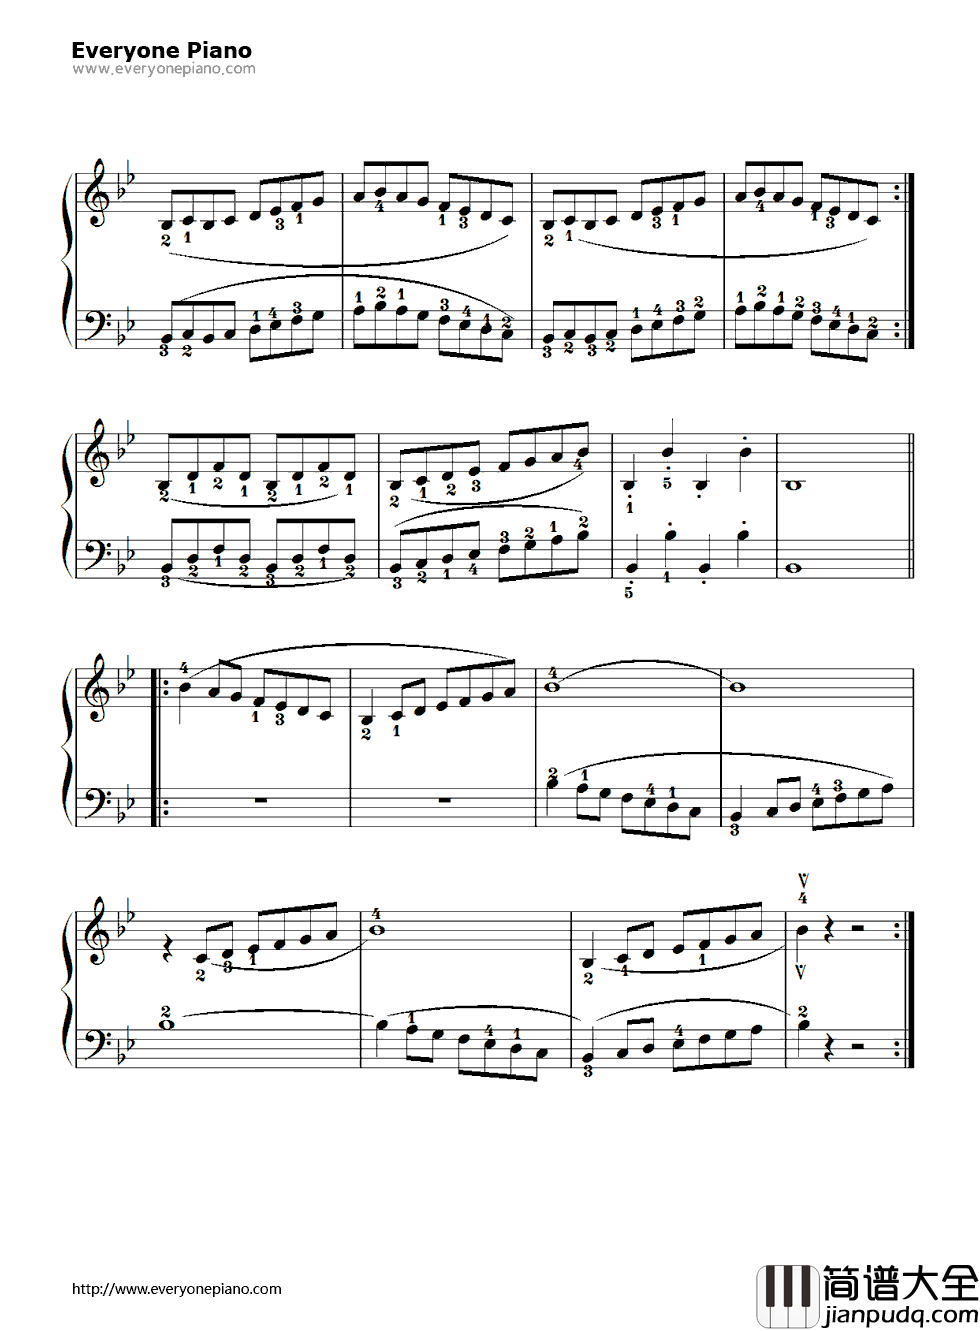 降B调练习曲（B_Flat_Major_Scale）钢琴谱_拜厄